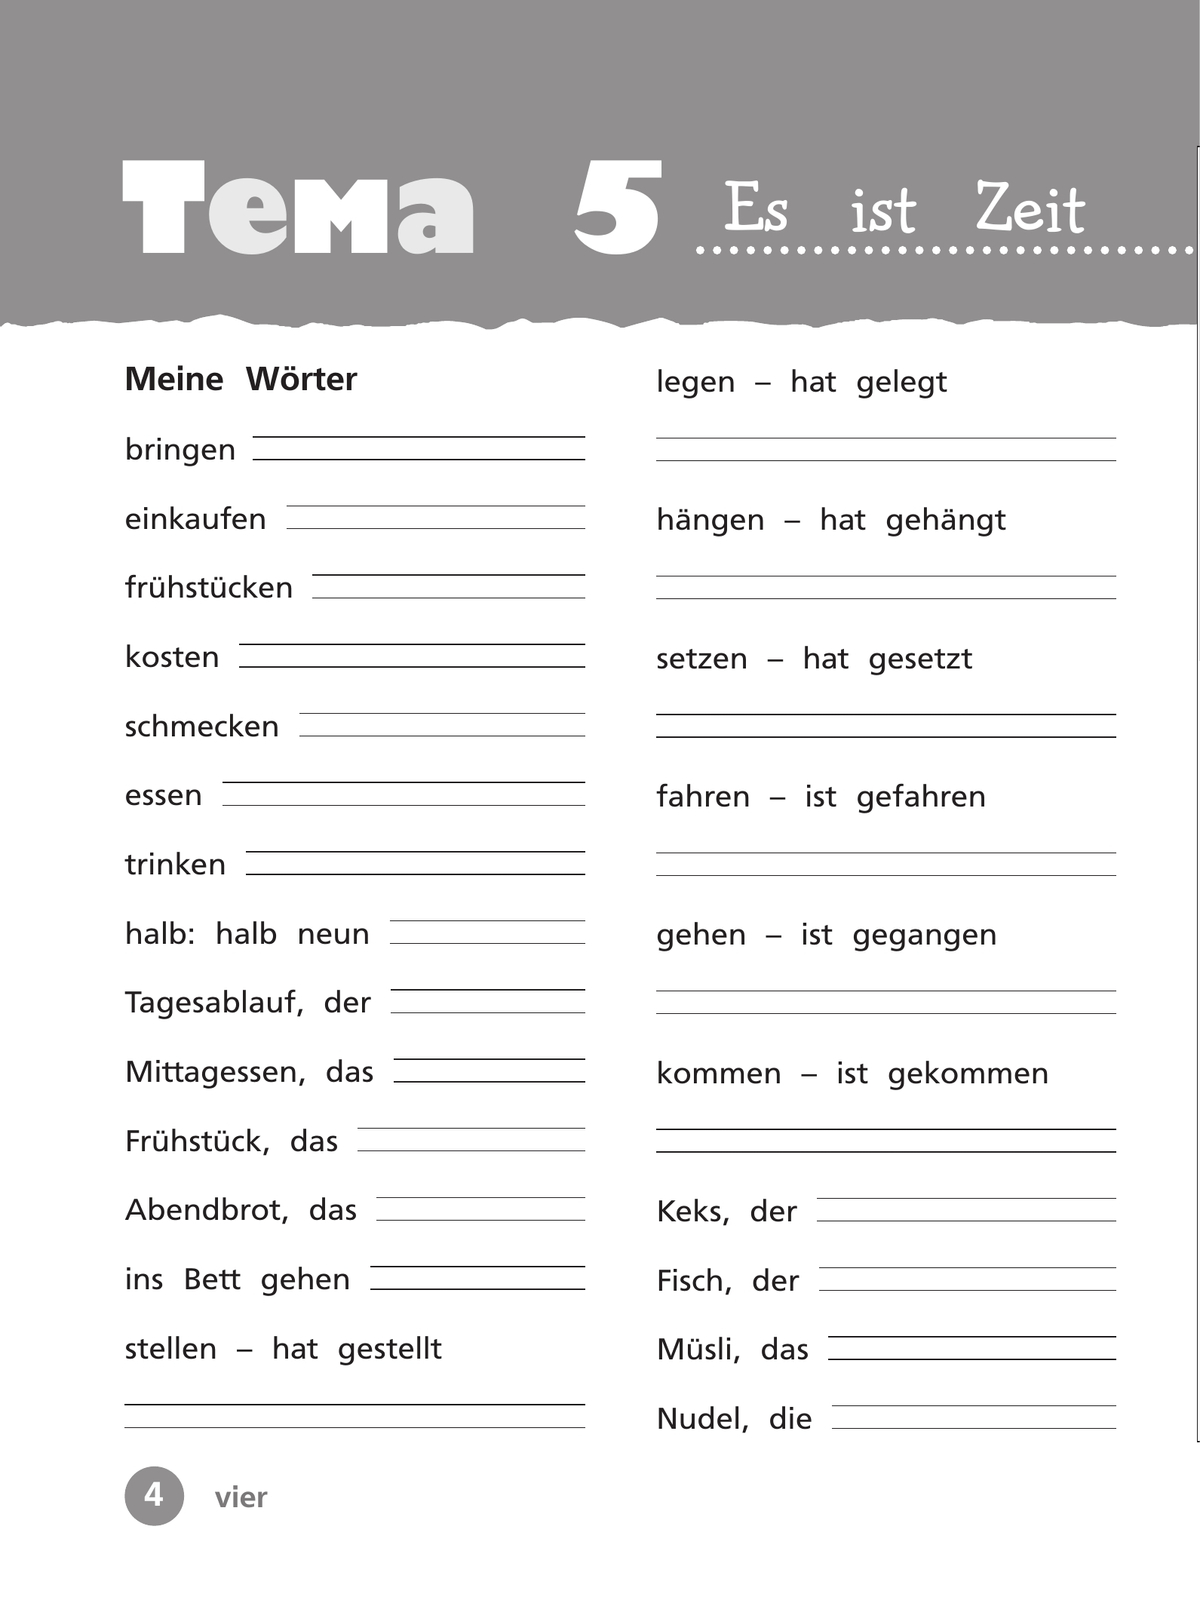 Немецкий язык. Рабочая тетрадь. 3 класс. В 2 ч. Часть 2 8